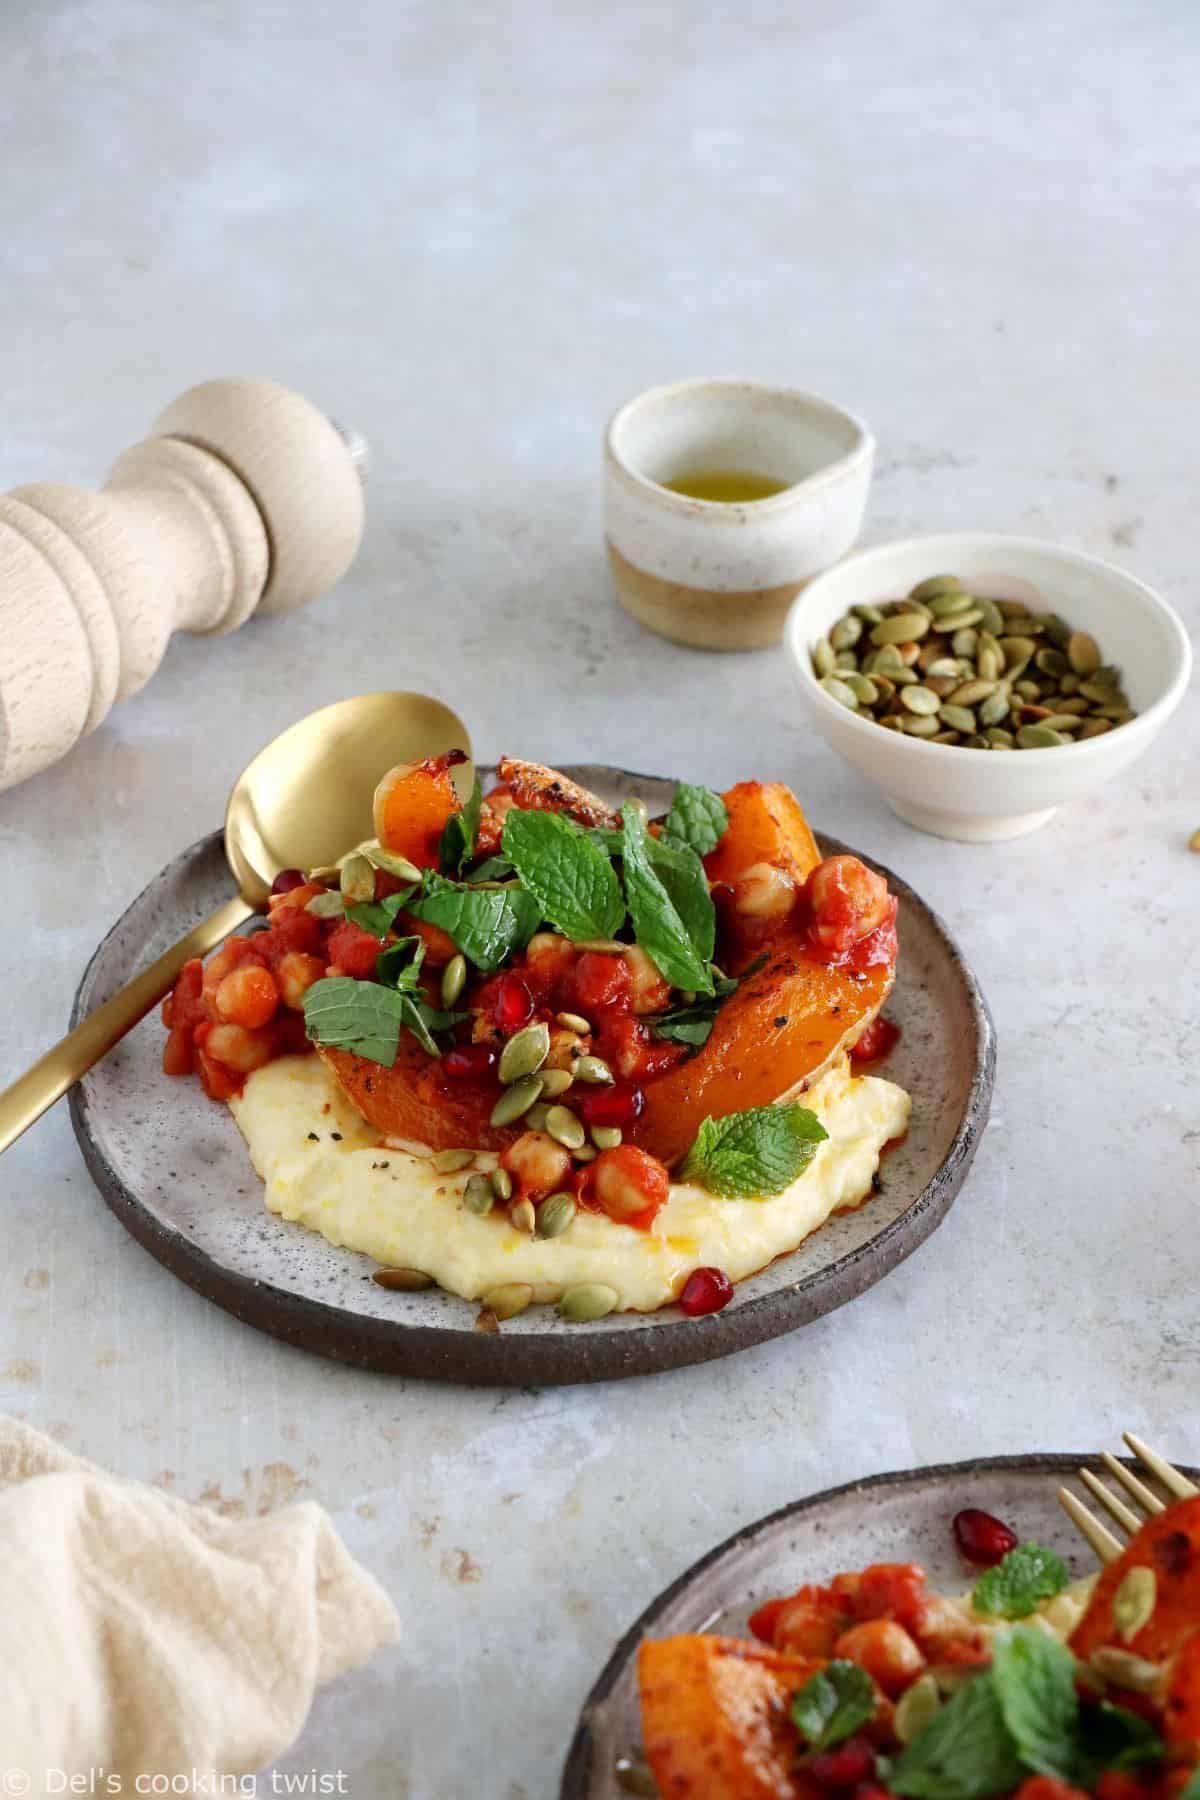 Cette recette de polenta et courge rôtie épicée à la harissa constitue un plat végétarien savoureux aux accents marocains.